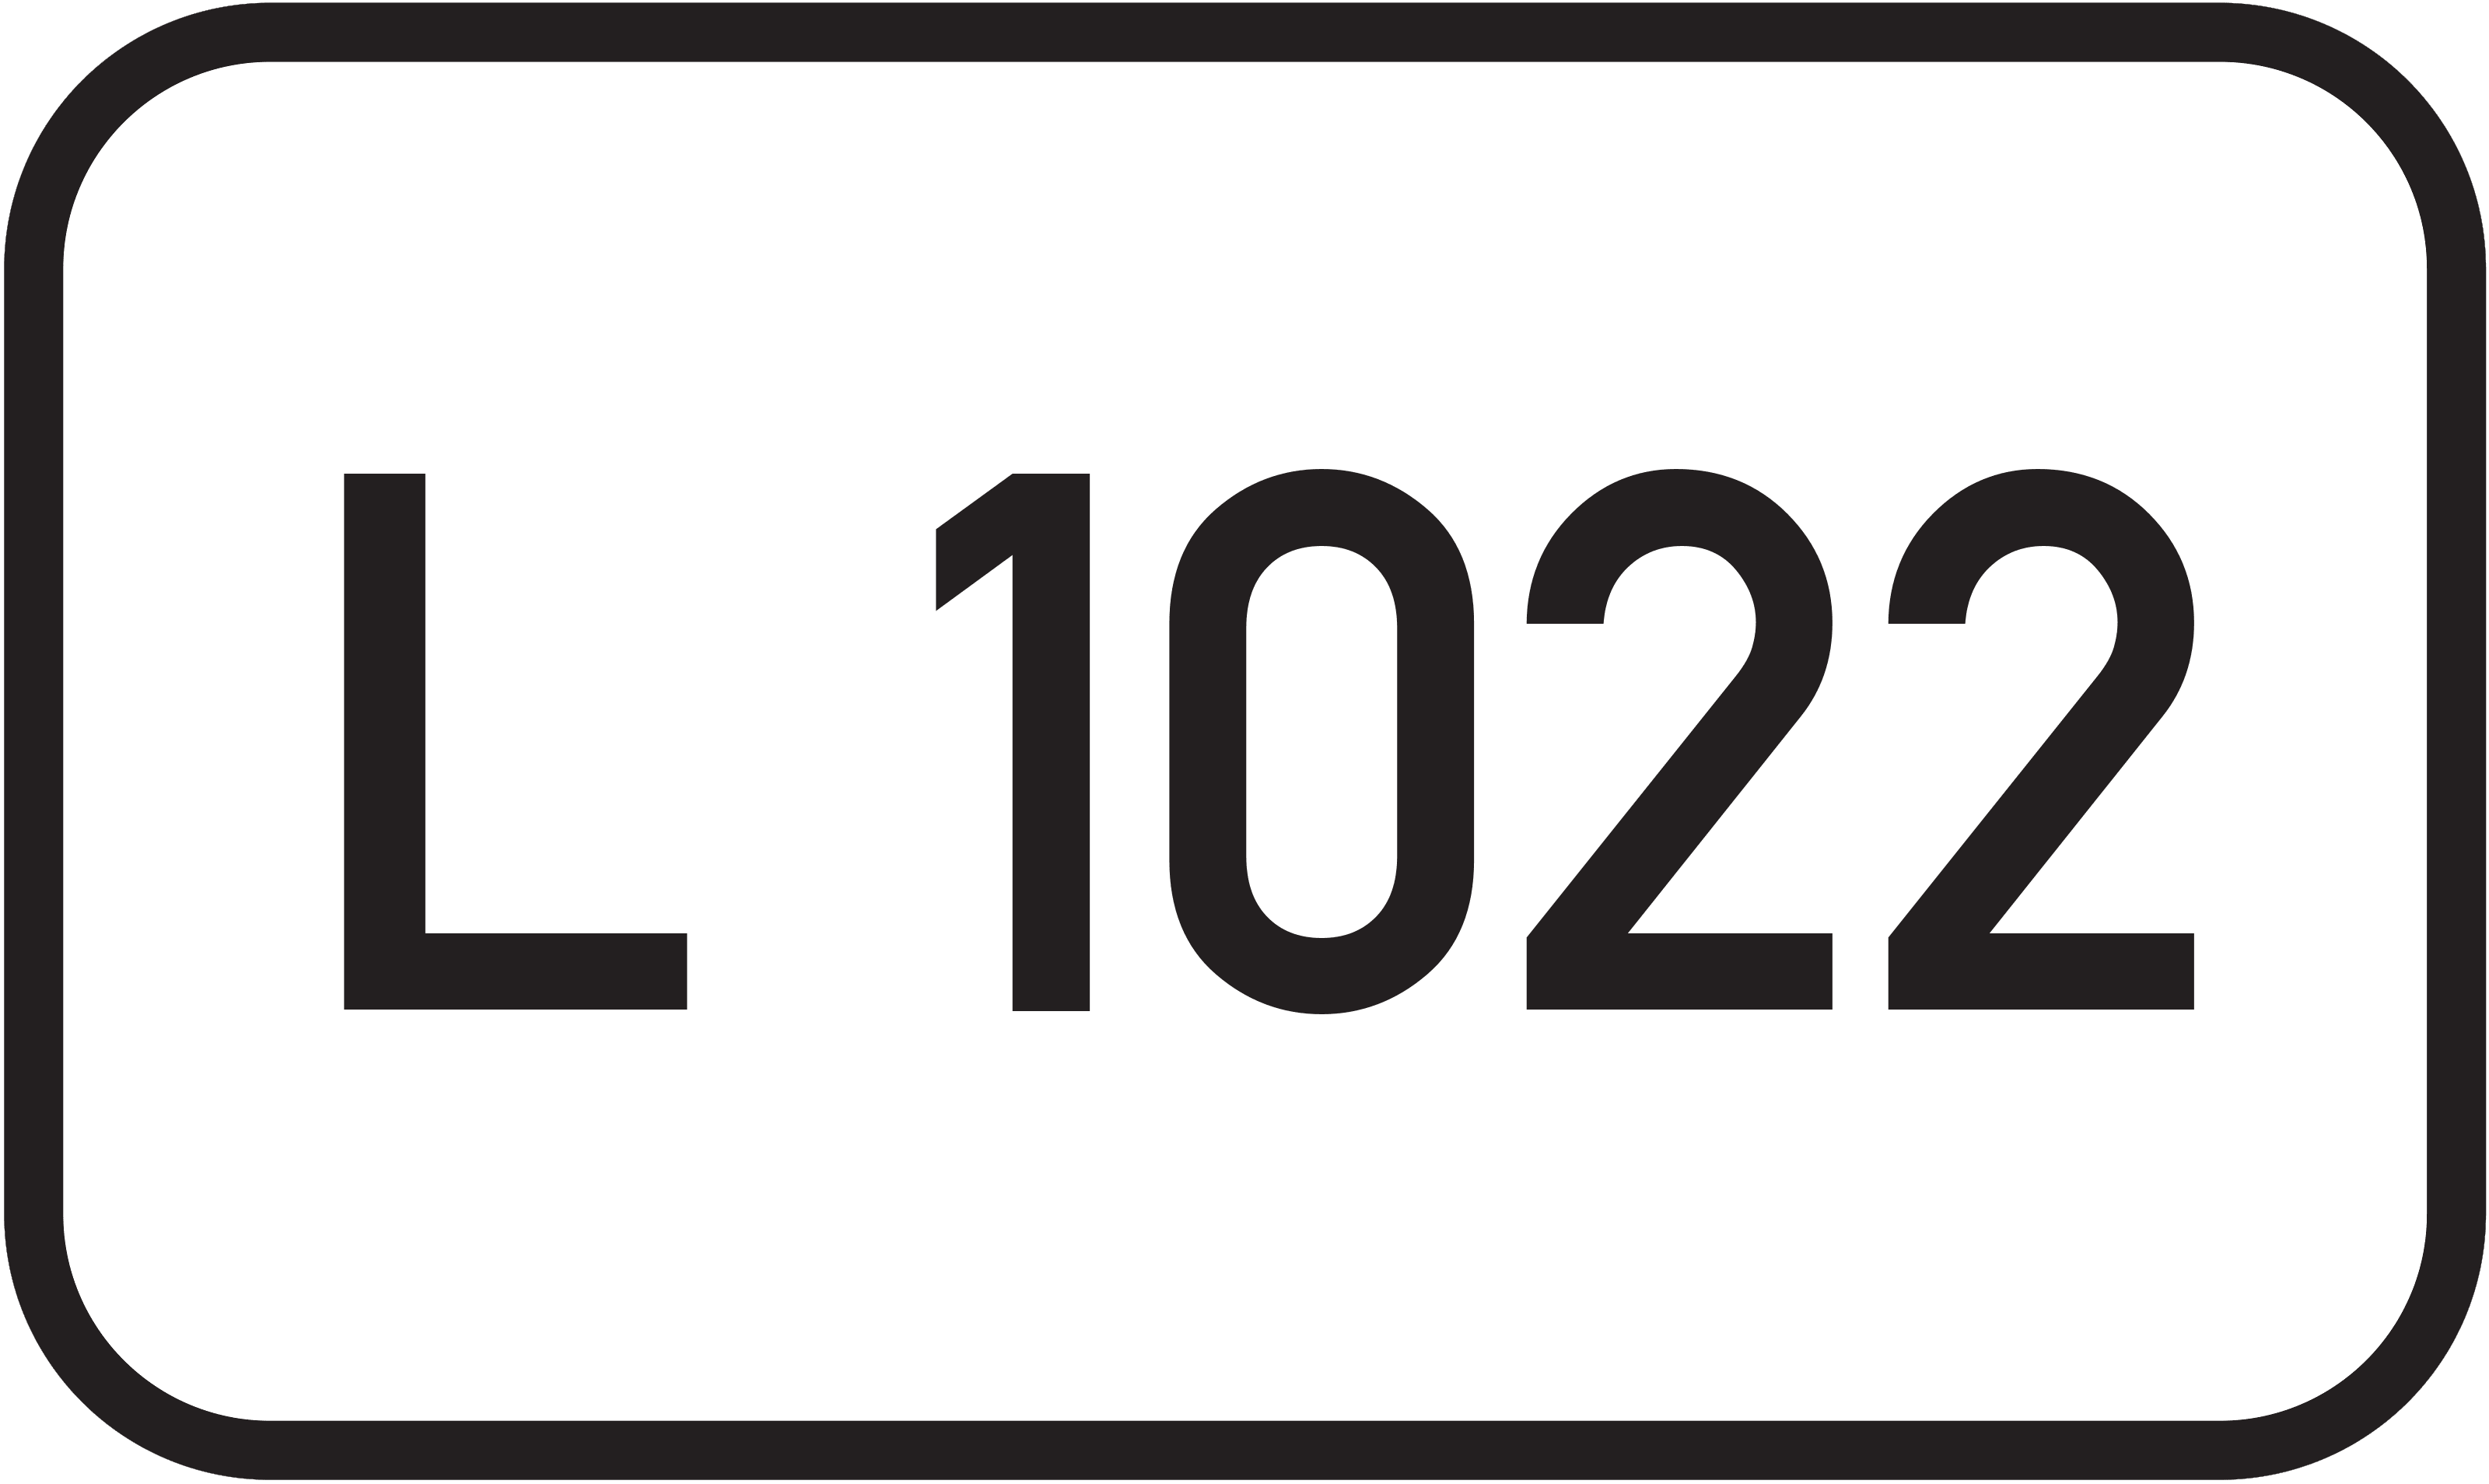 Landesstraße L 1022